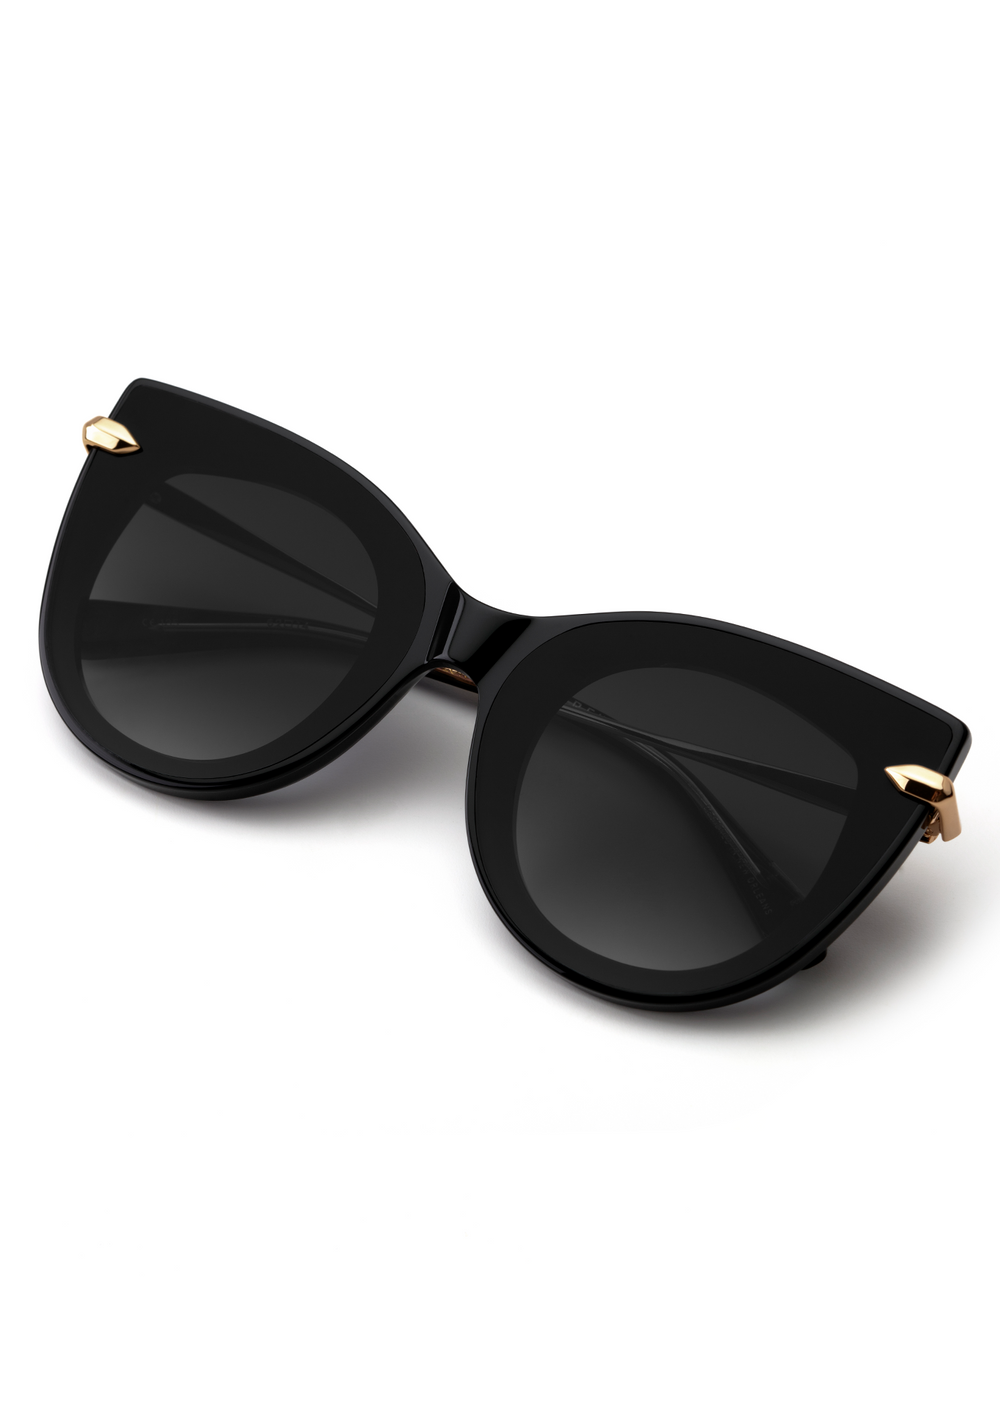 LAVEAU NYLON | Black and Crystal Handcrafted, Luxury, Black Acetate KREWE Sunglasses